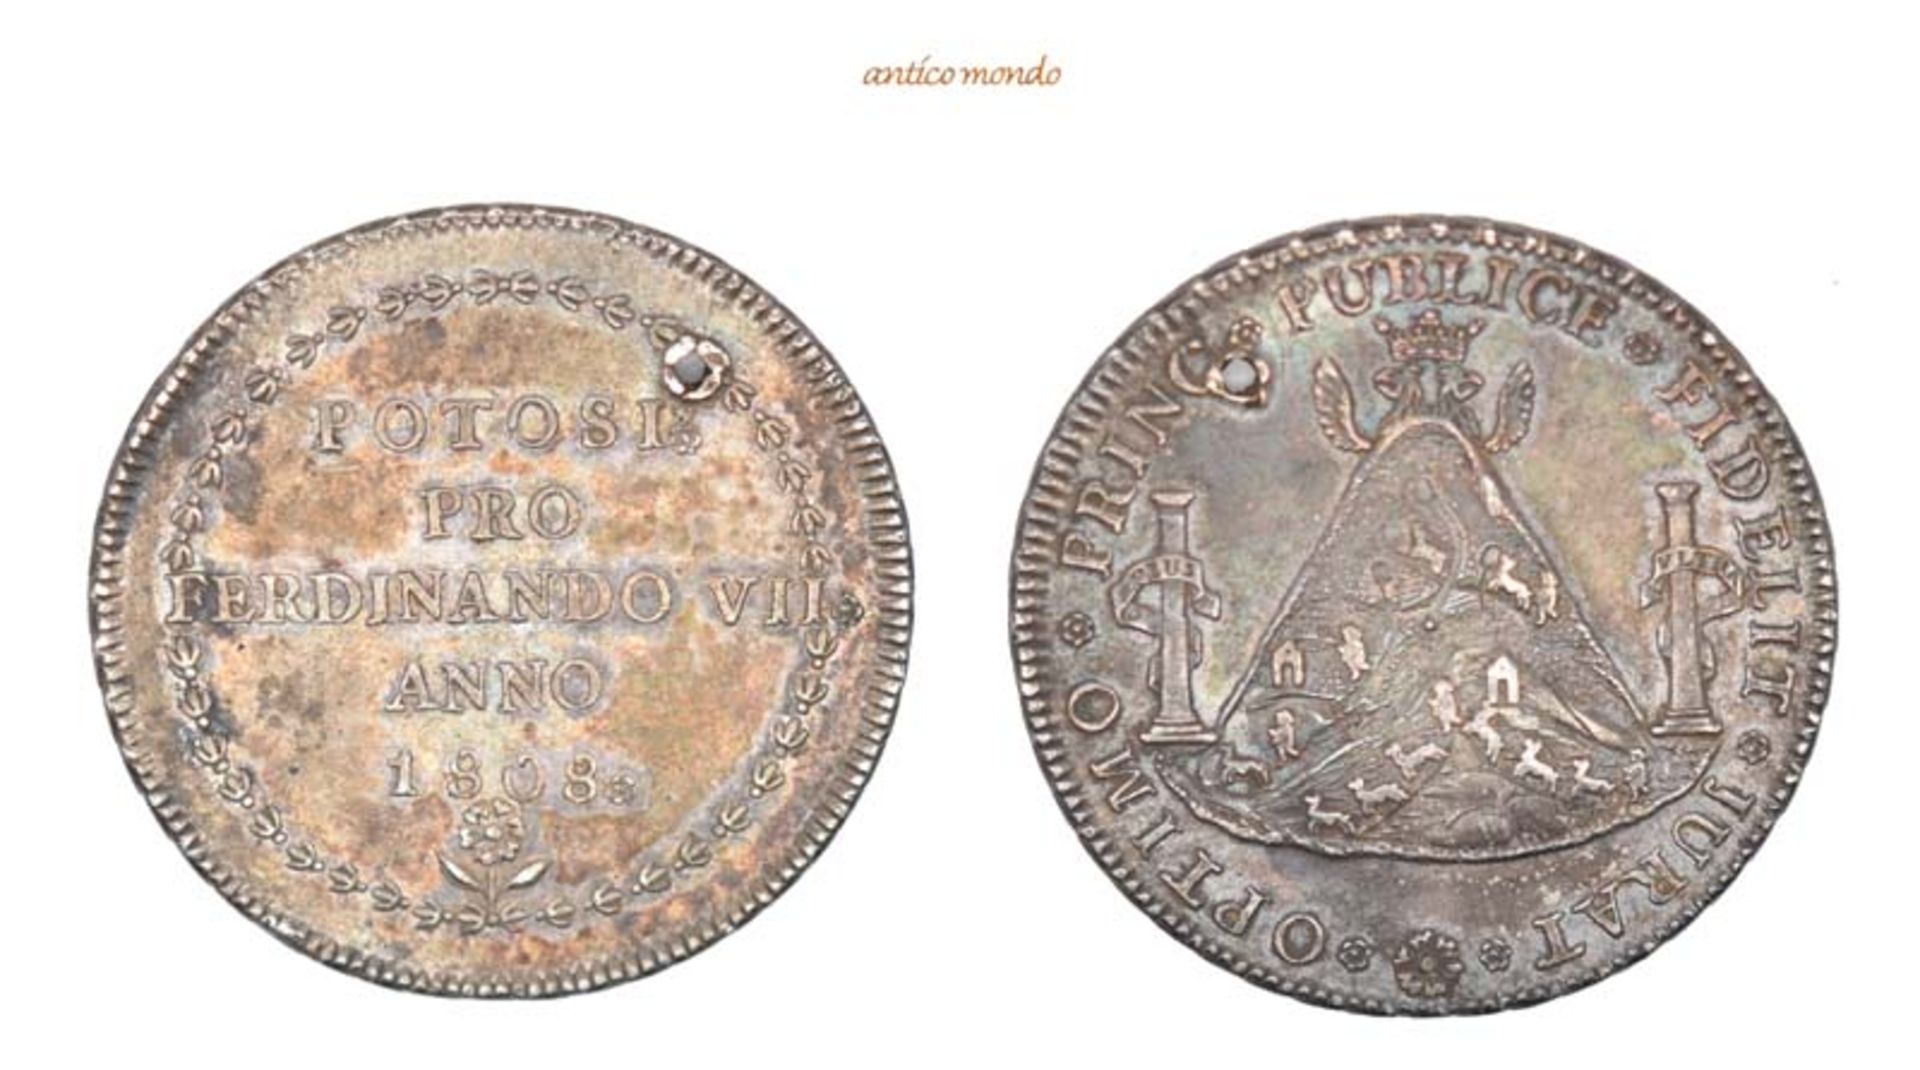 Bolivien, Ferdinand VII., 1808-1824, 8 Reales, 1808, gelocht, sehr schön-vorzüglich, 27,07 g- - -